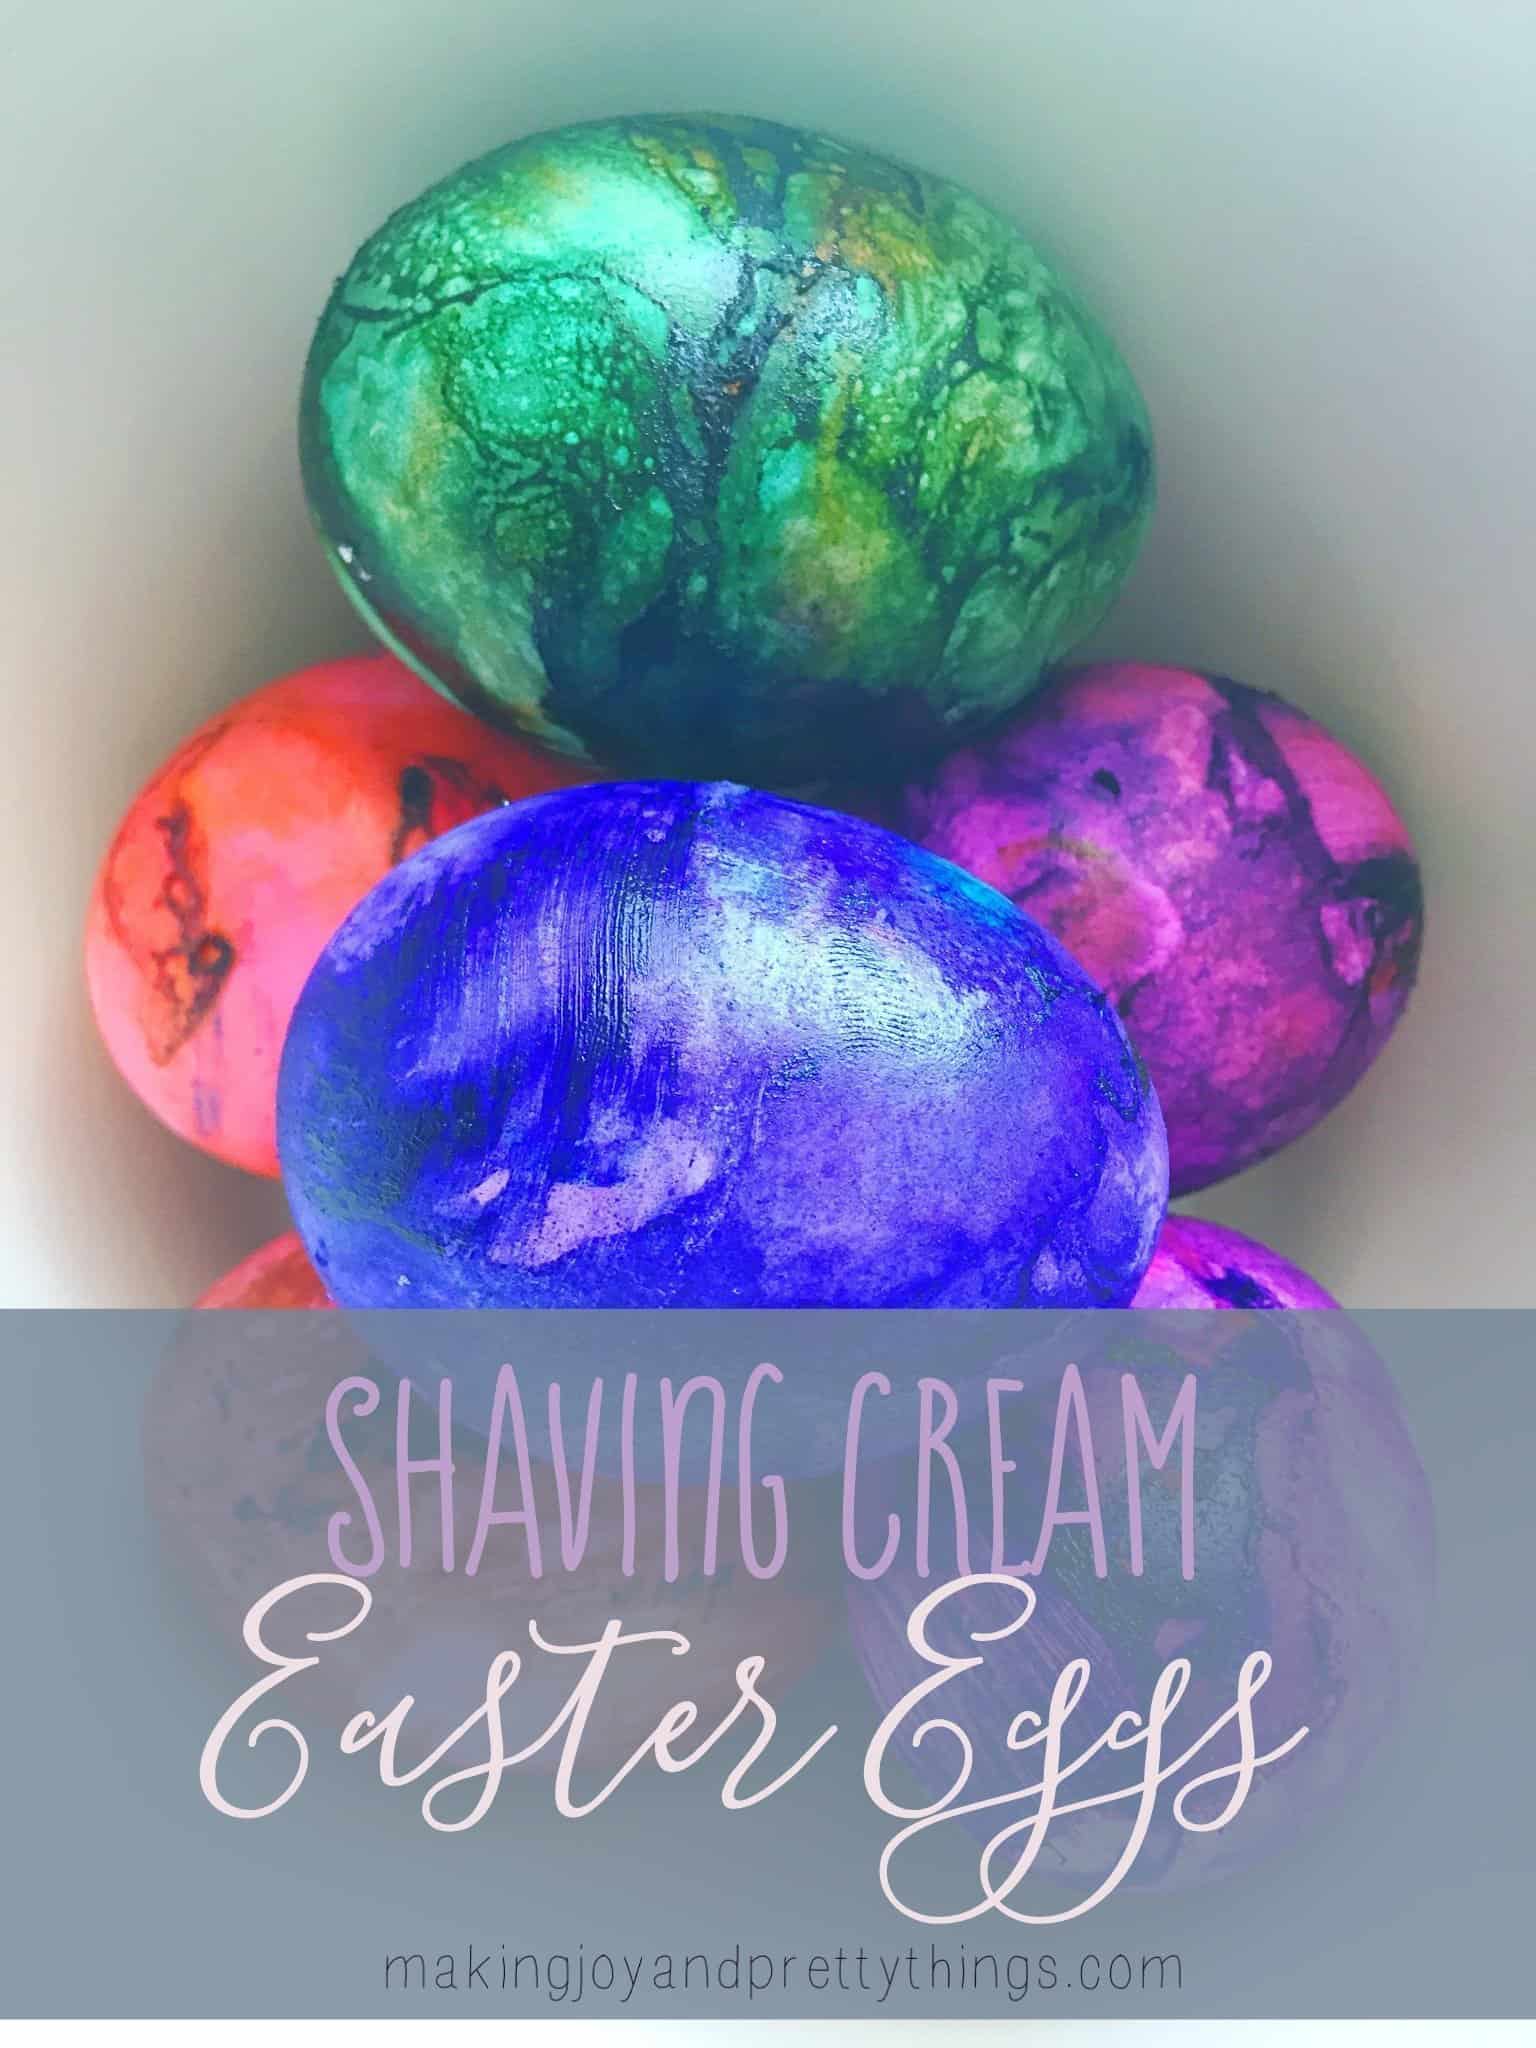 Shaving Cream Easter Eggs